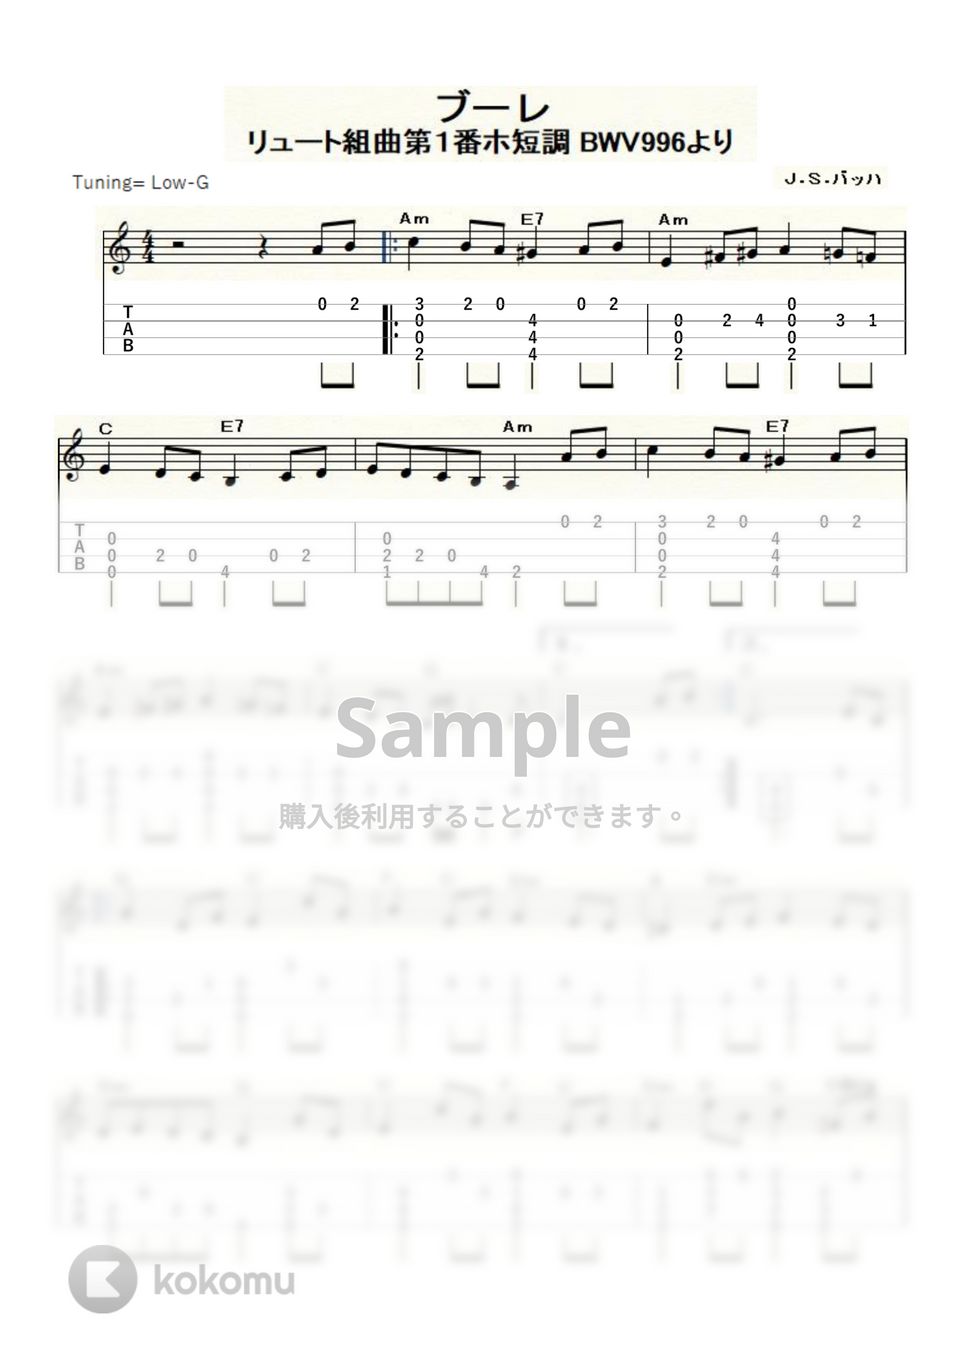 バッハ - ブーレ ～リュート組曲第１番ホ短調 BWV996～ (ｳｸﾚﾚｿﾛ/Low-G/中級) by ukulelepapa